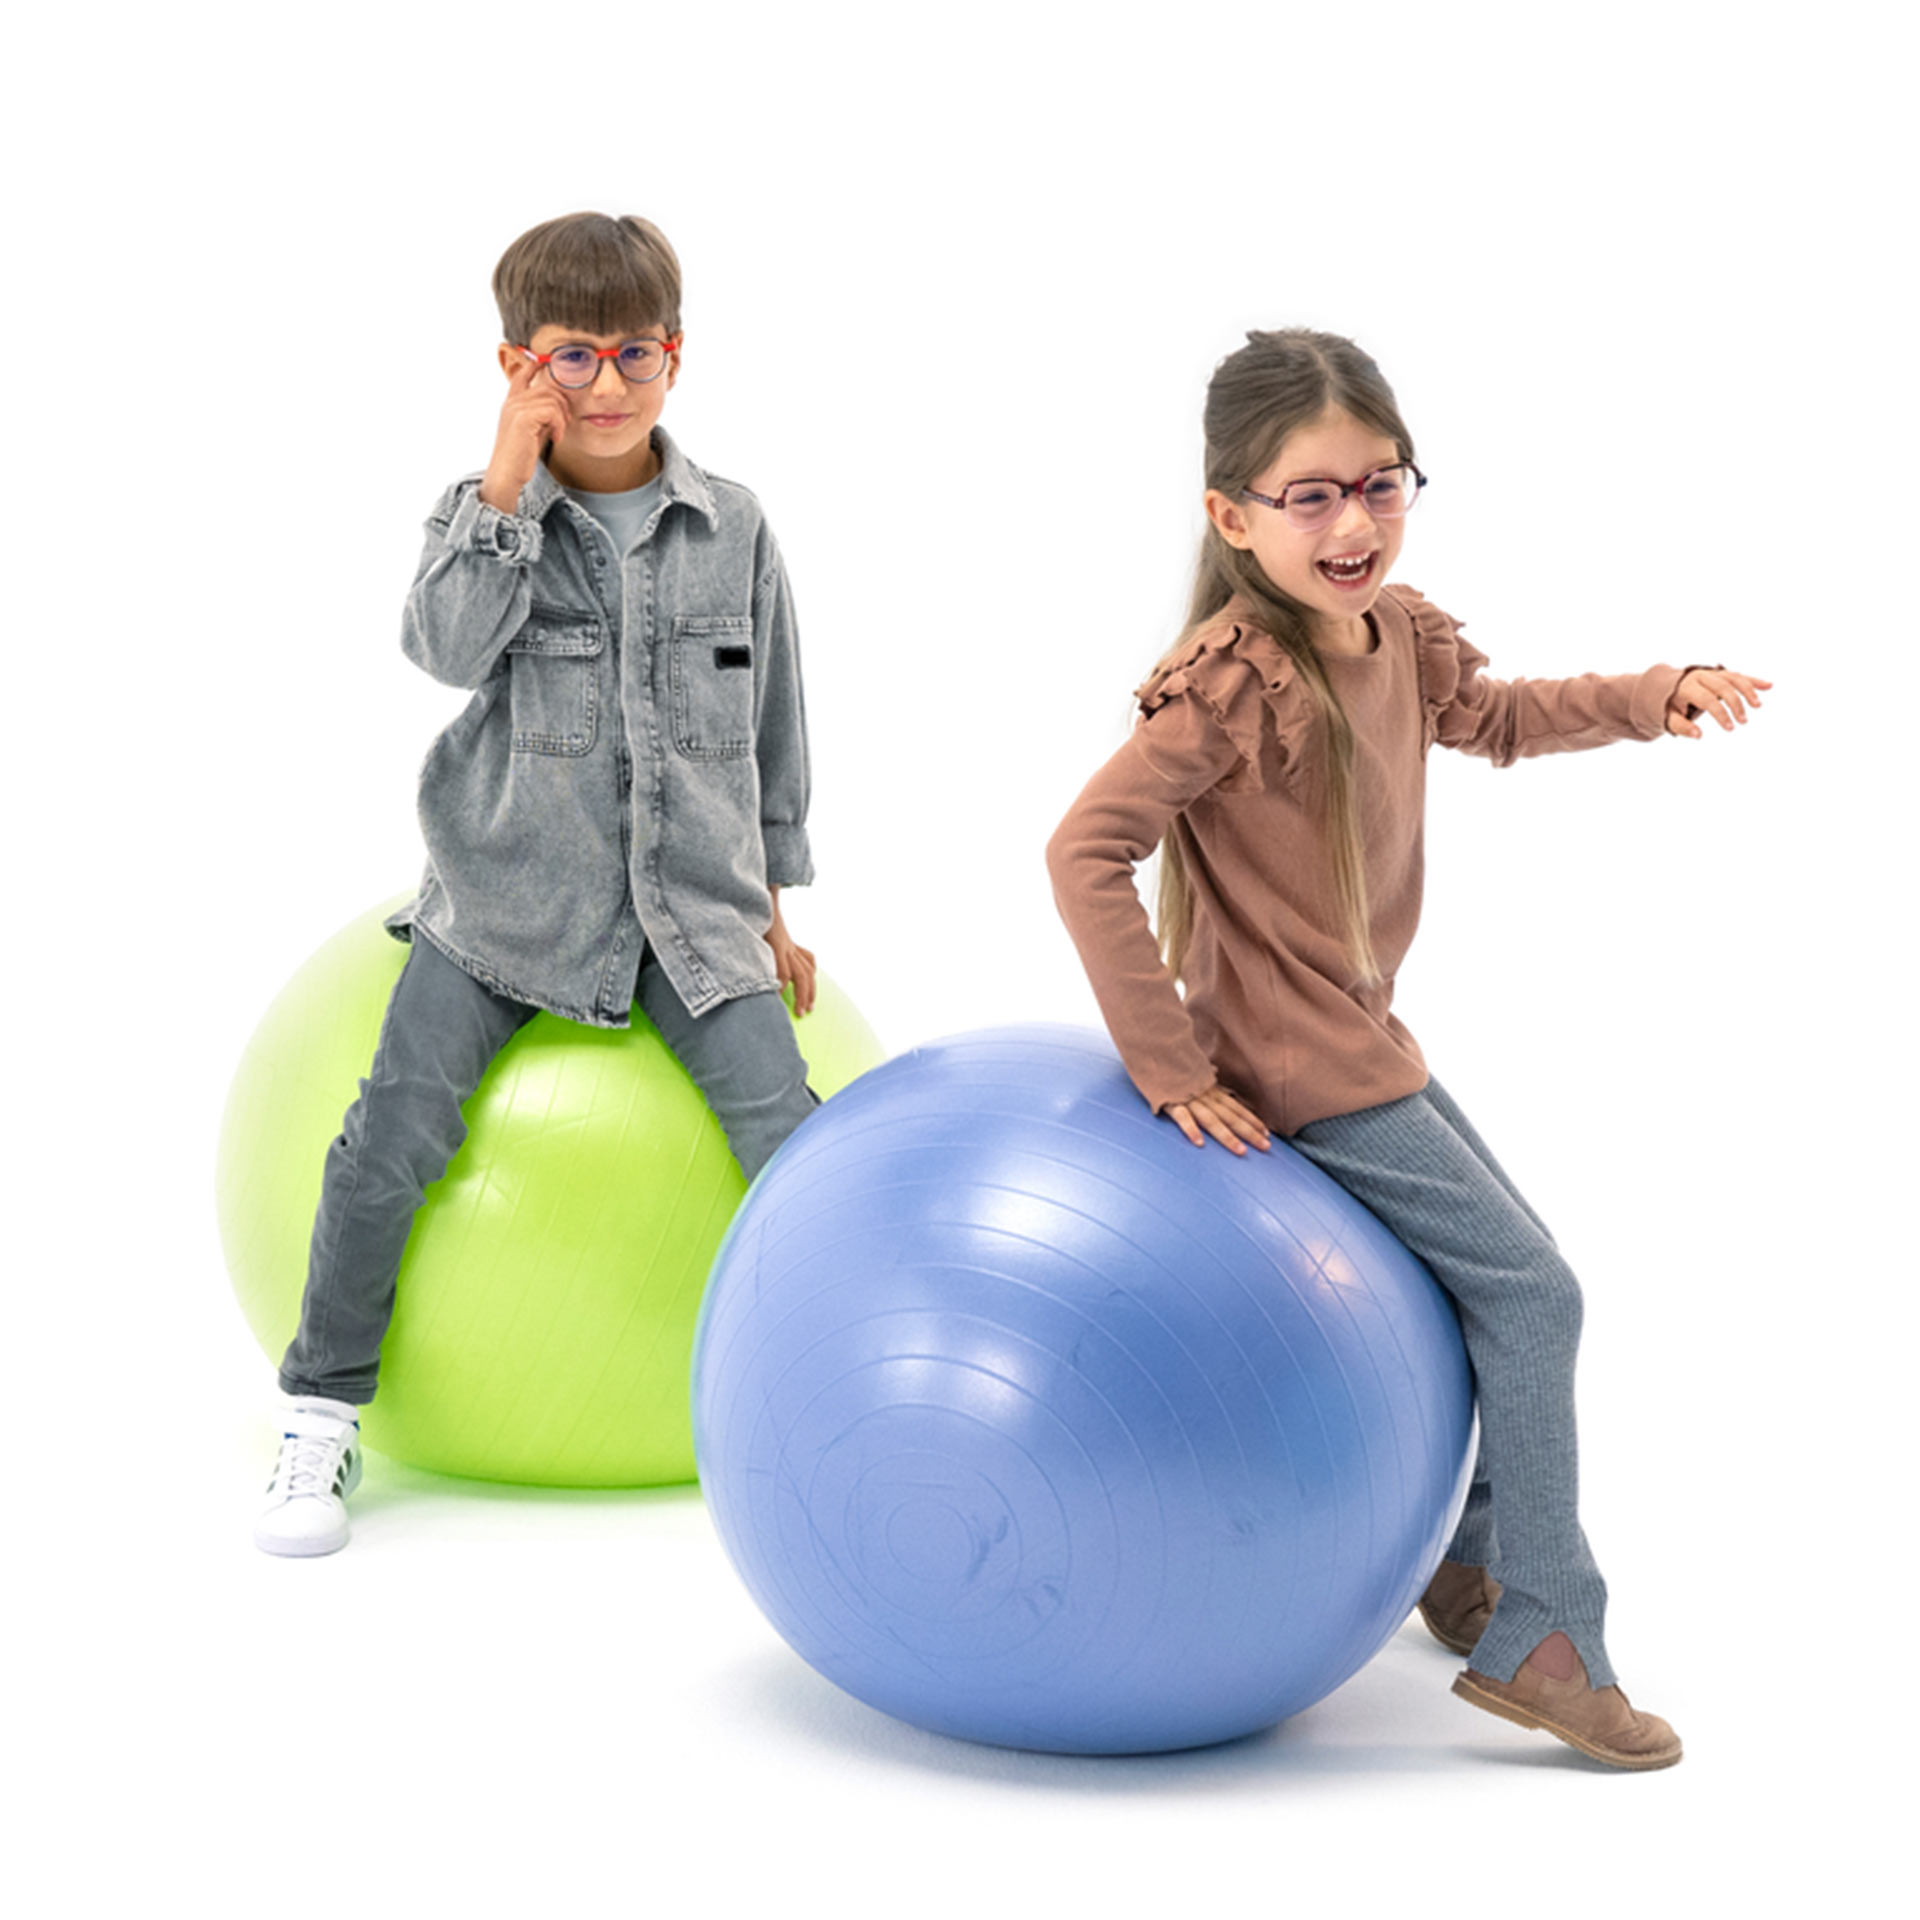 Poika ja tyttö, joilla molemmilla on silmälasit, pomppivat leikkisästi jumppapalloilla.